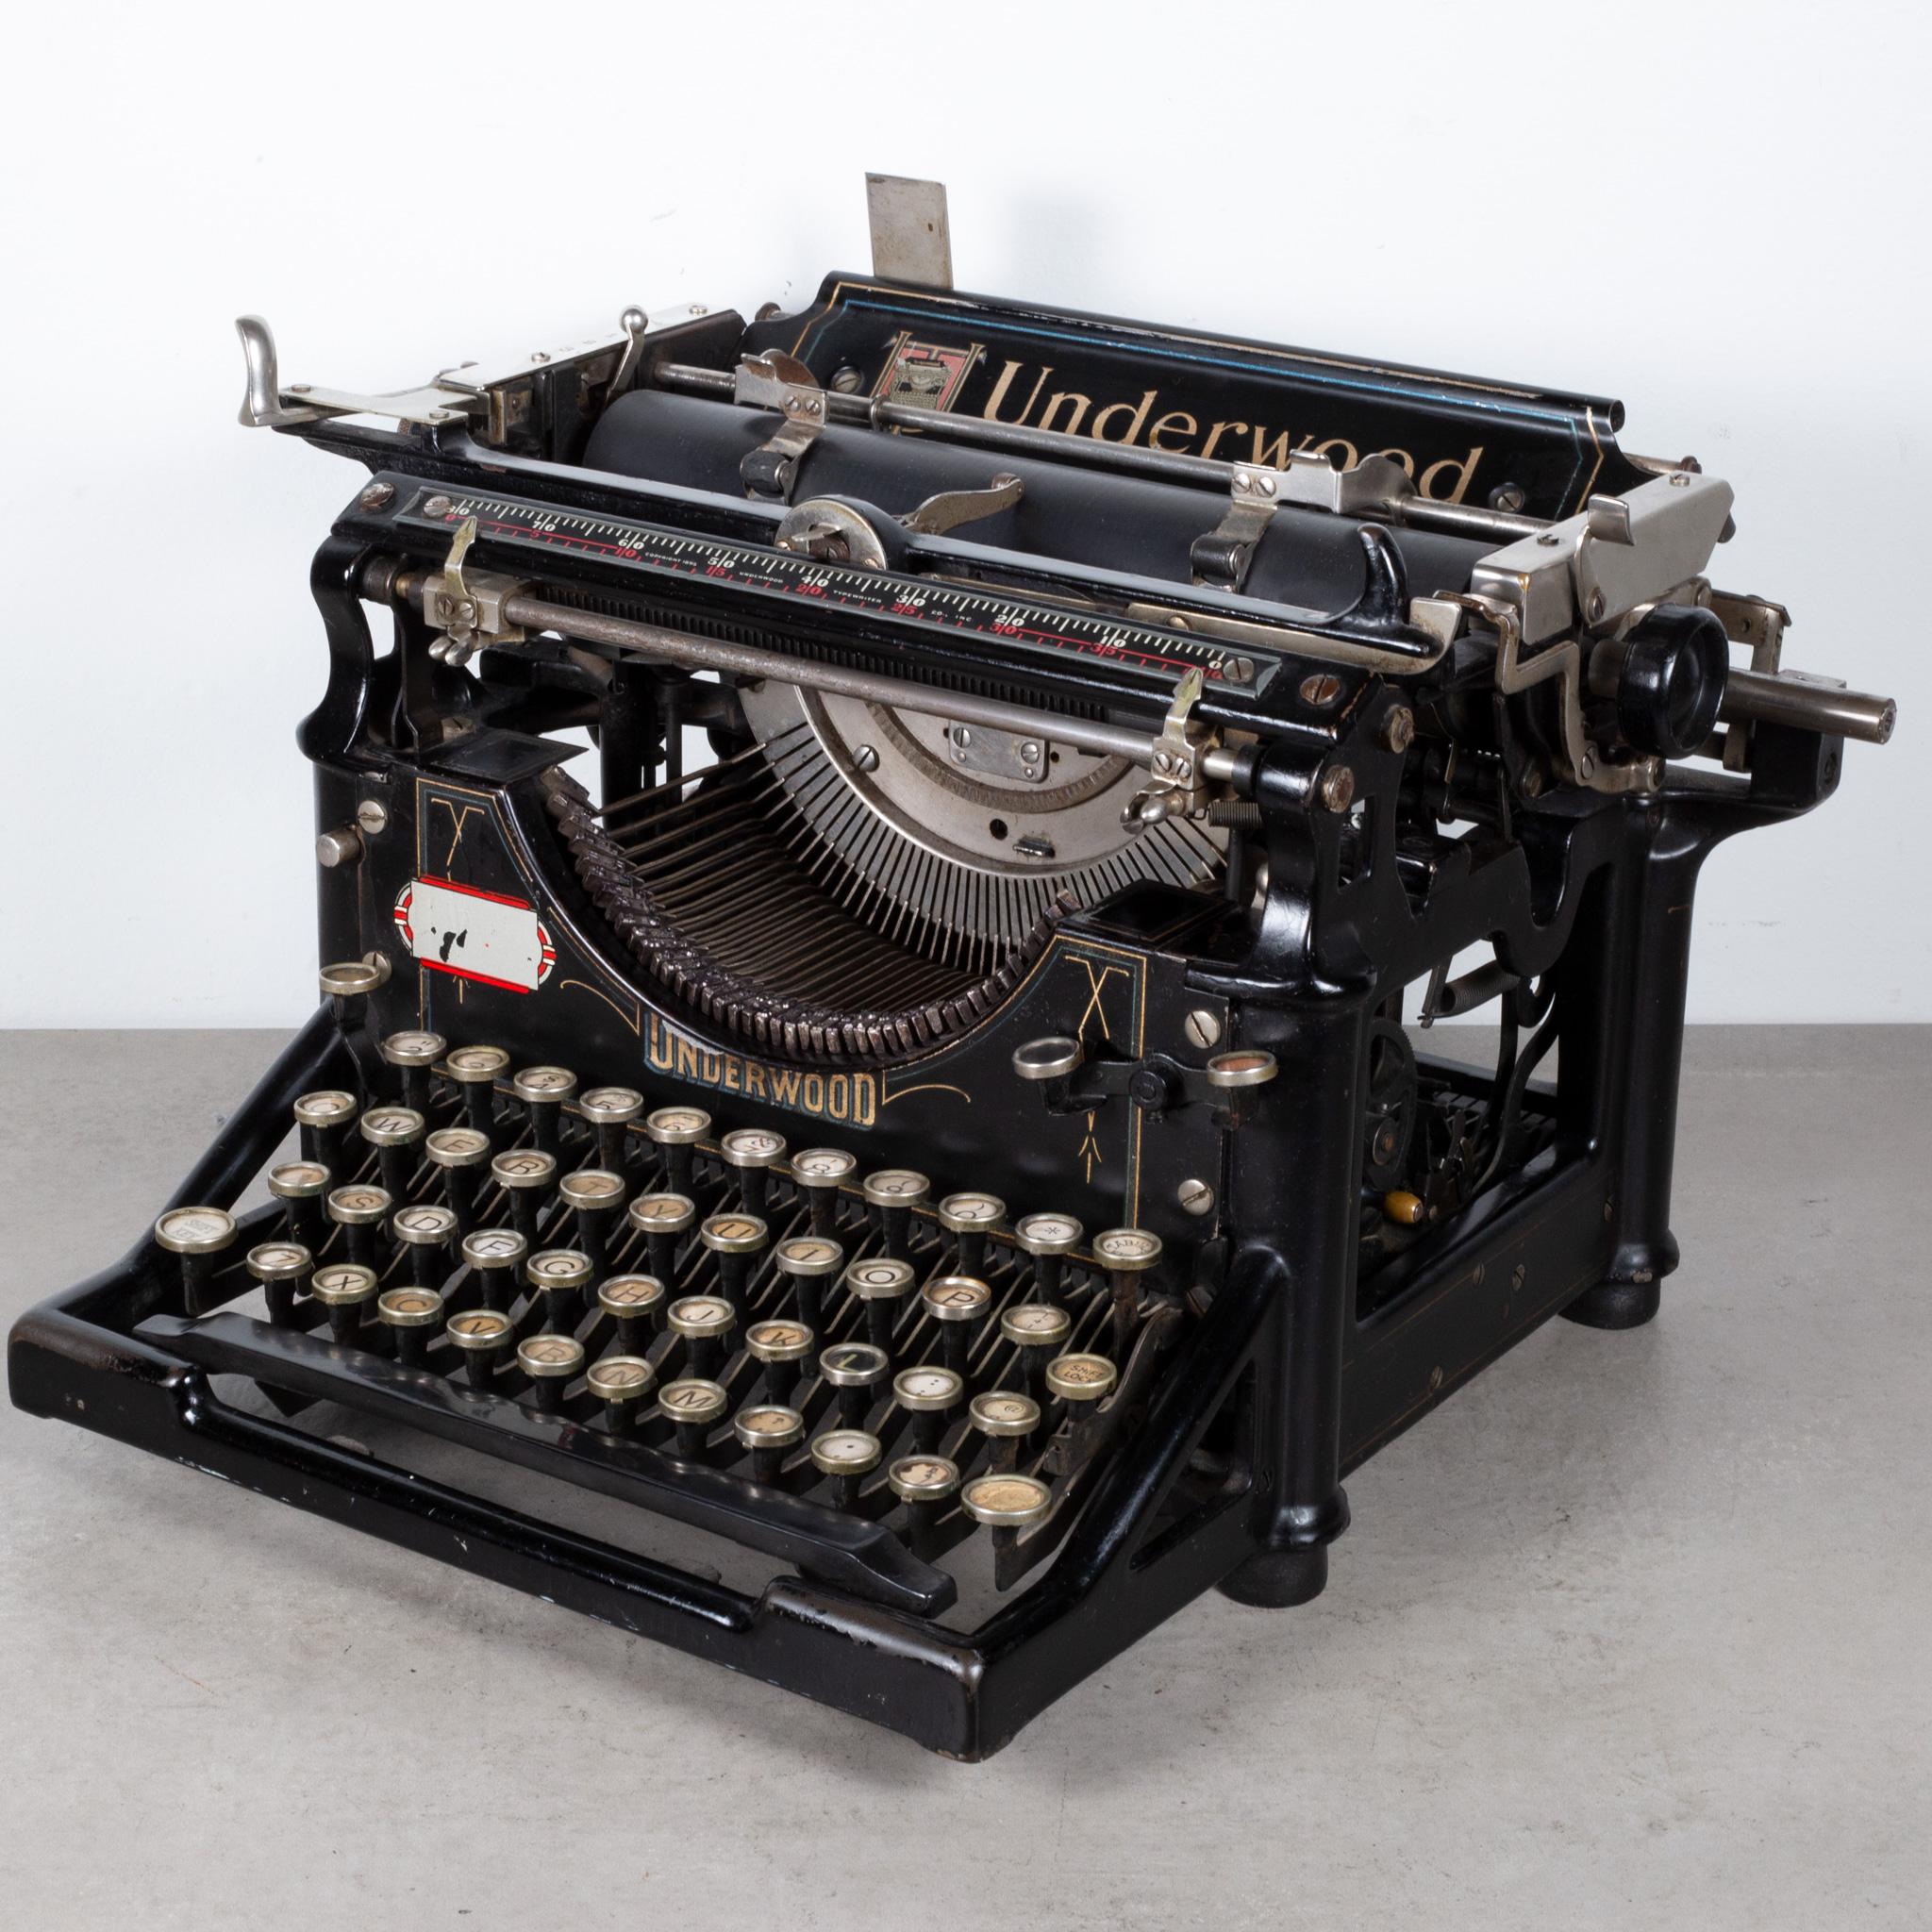 1928 underwood typewriter